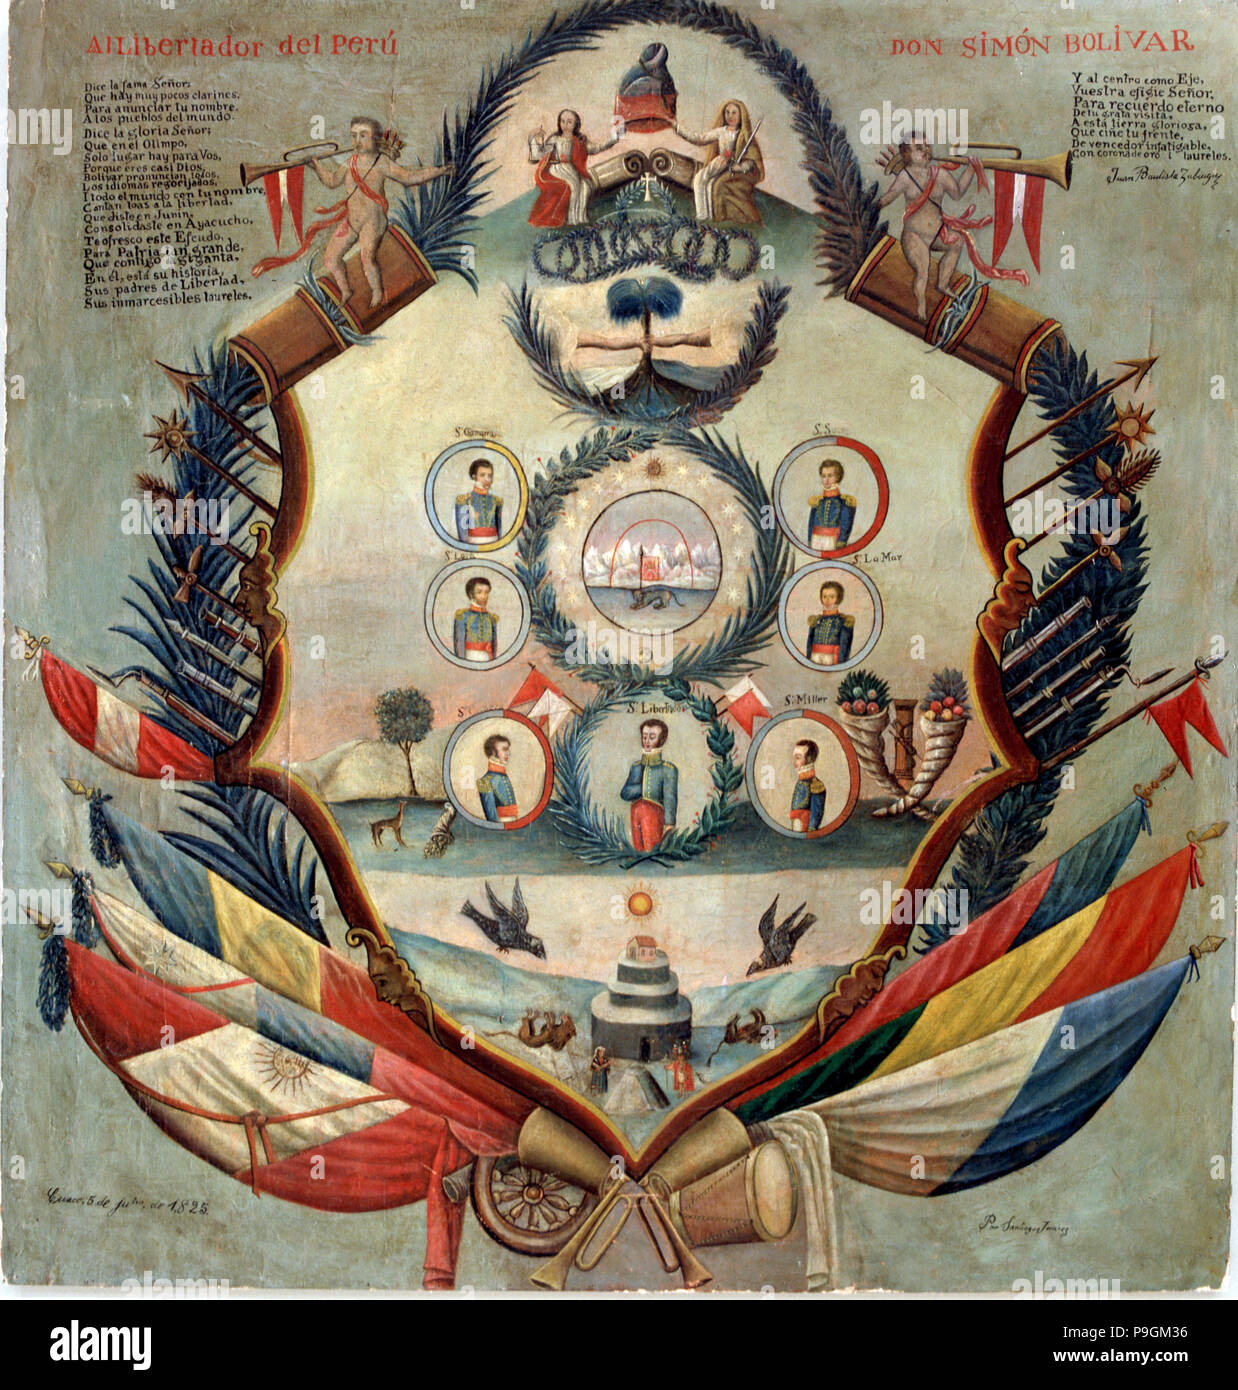 Allegorie mit Simon Bolivar, den Befreier von Peru (1783-1830). Stockfoto